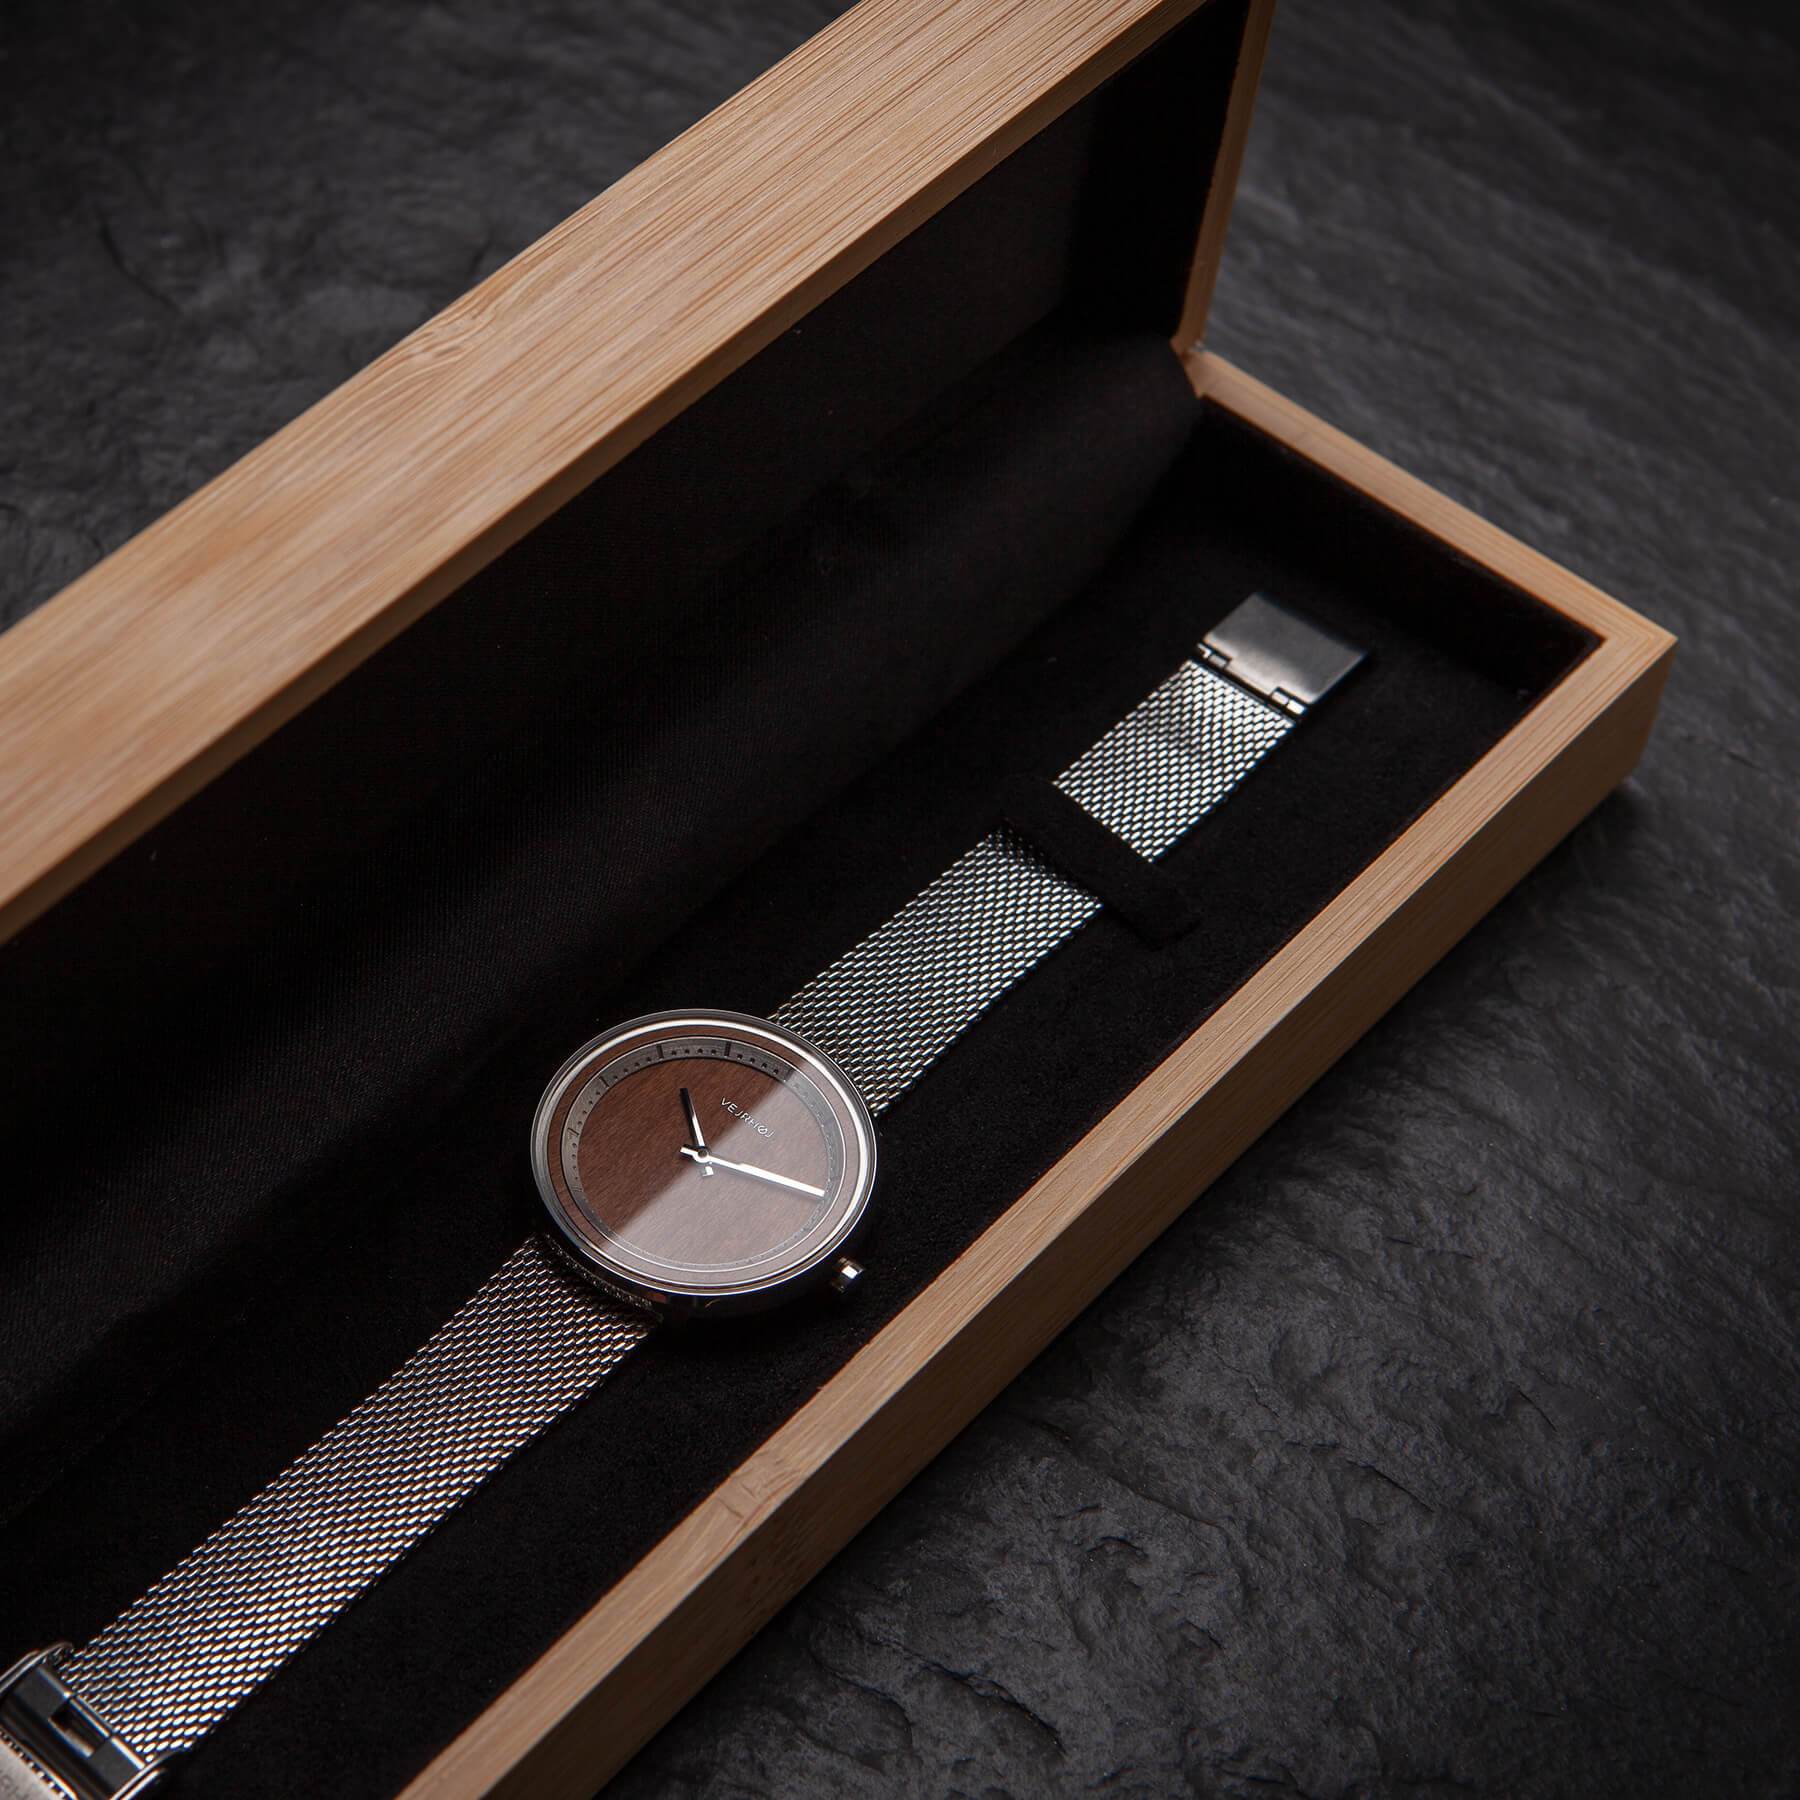 VEJRHØJの木箱に入った木製腕時計 | SAKURA | mesh 